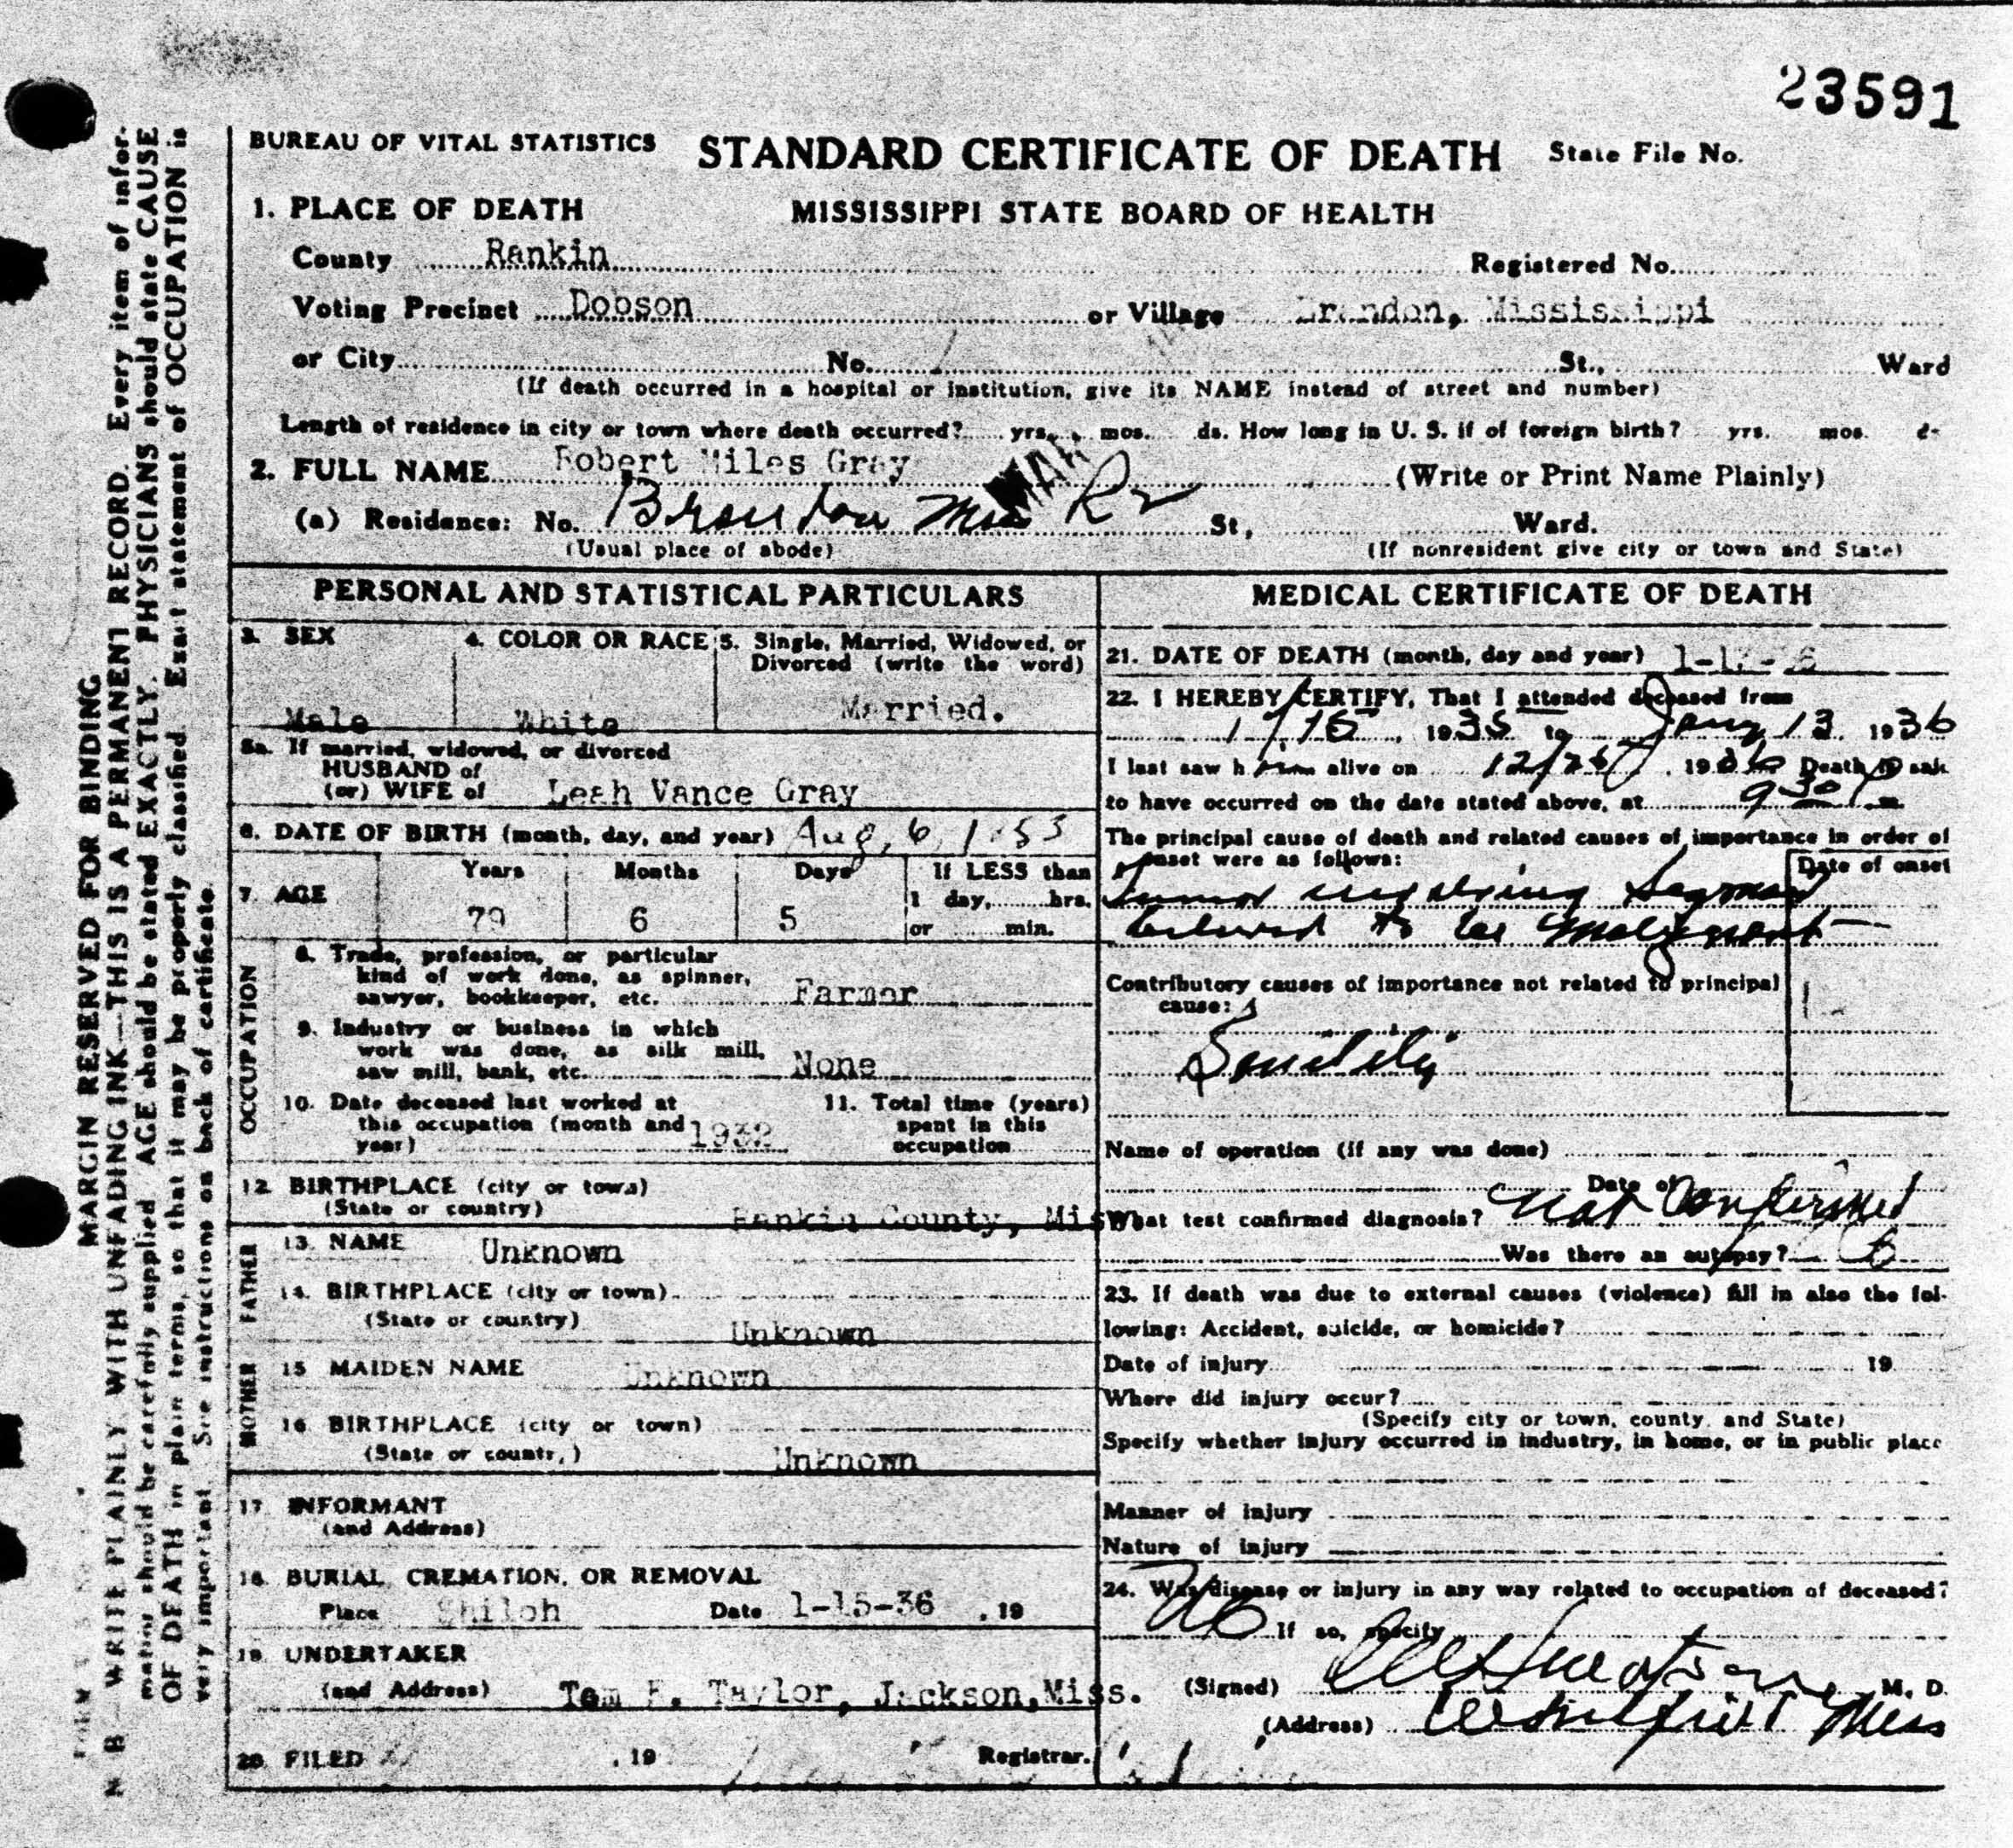 Robert Miles Gray Death Certificate 2